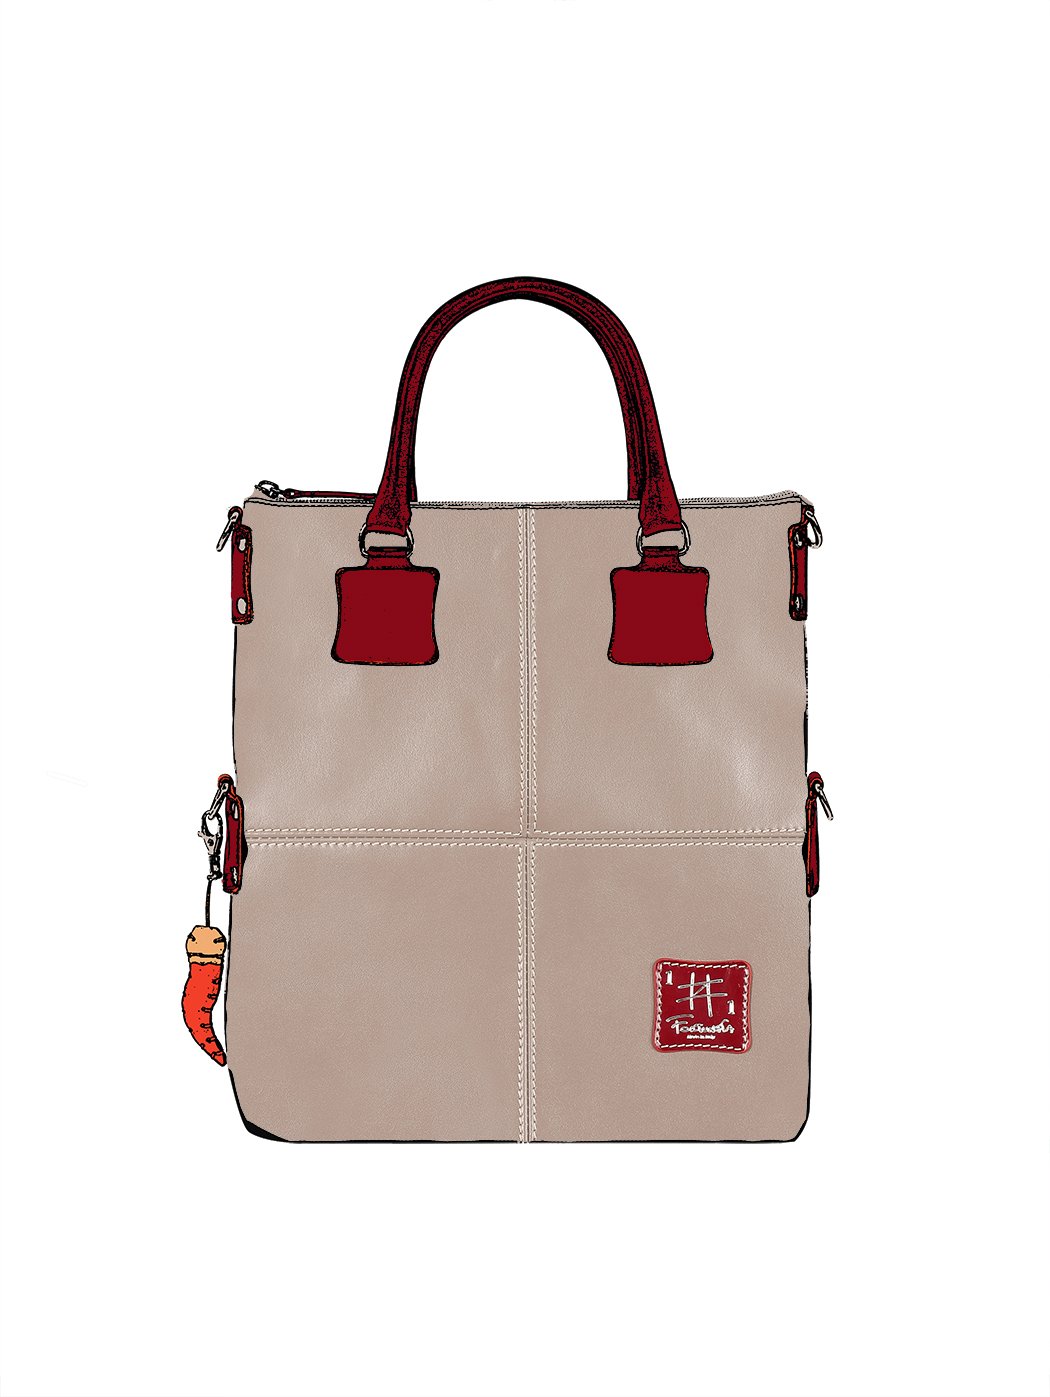 Дизайнерская сумка из коллекции Fortunata бежевого цвета